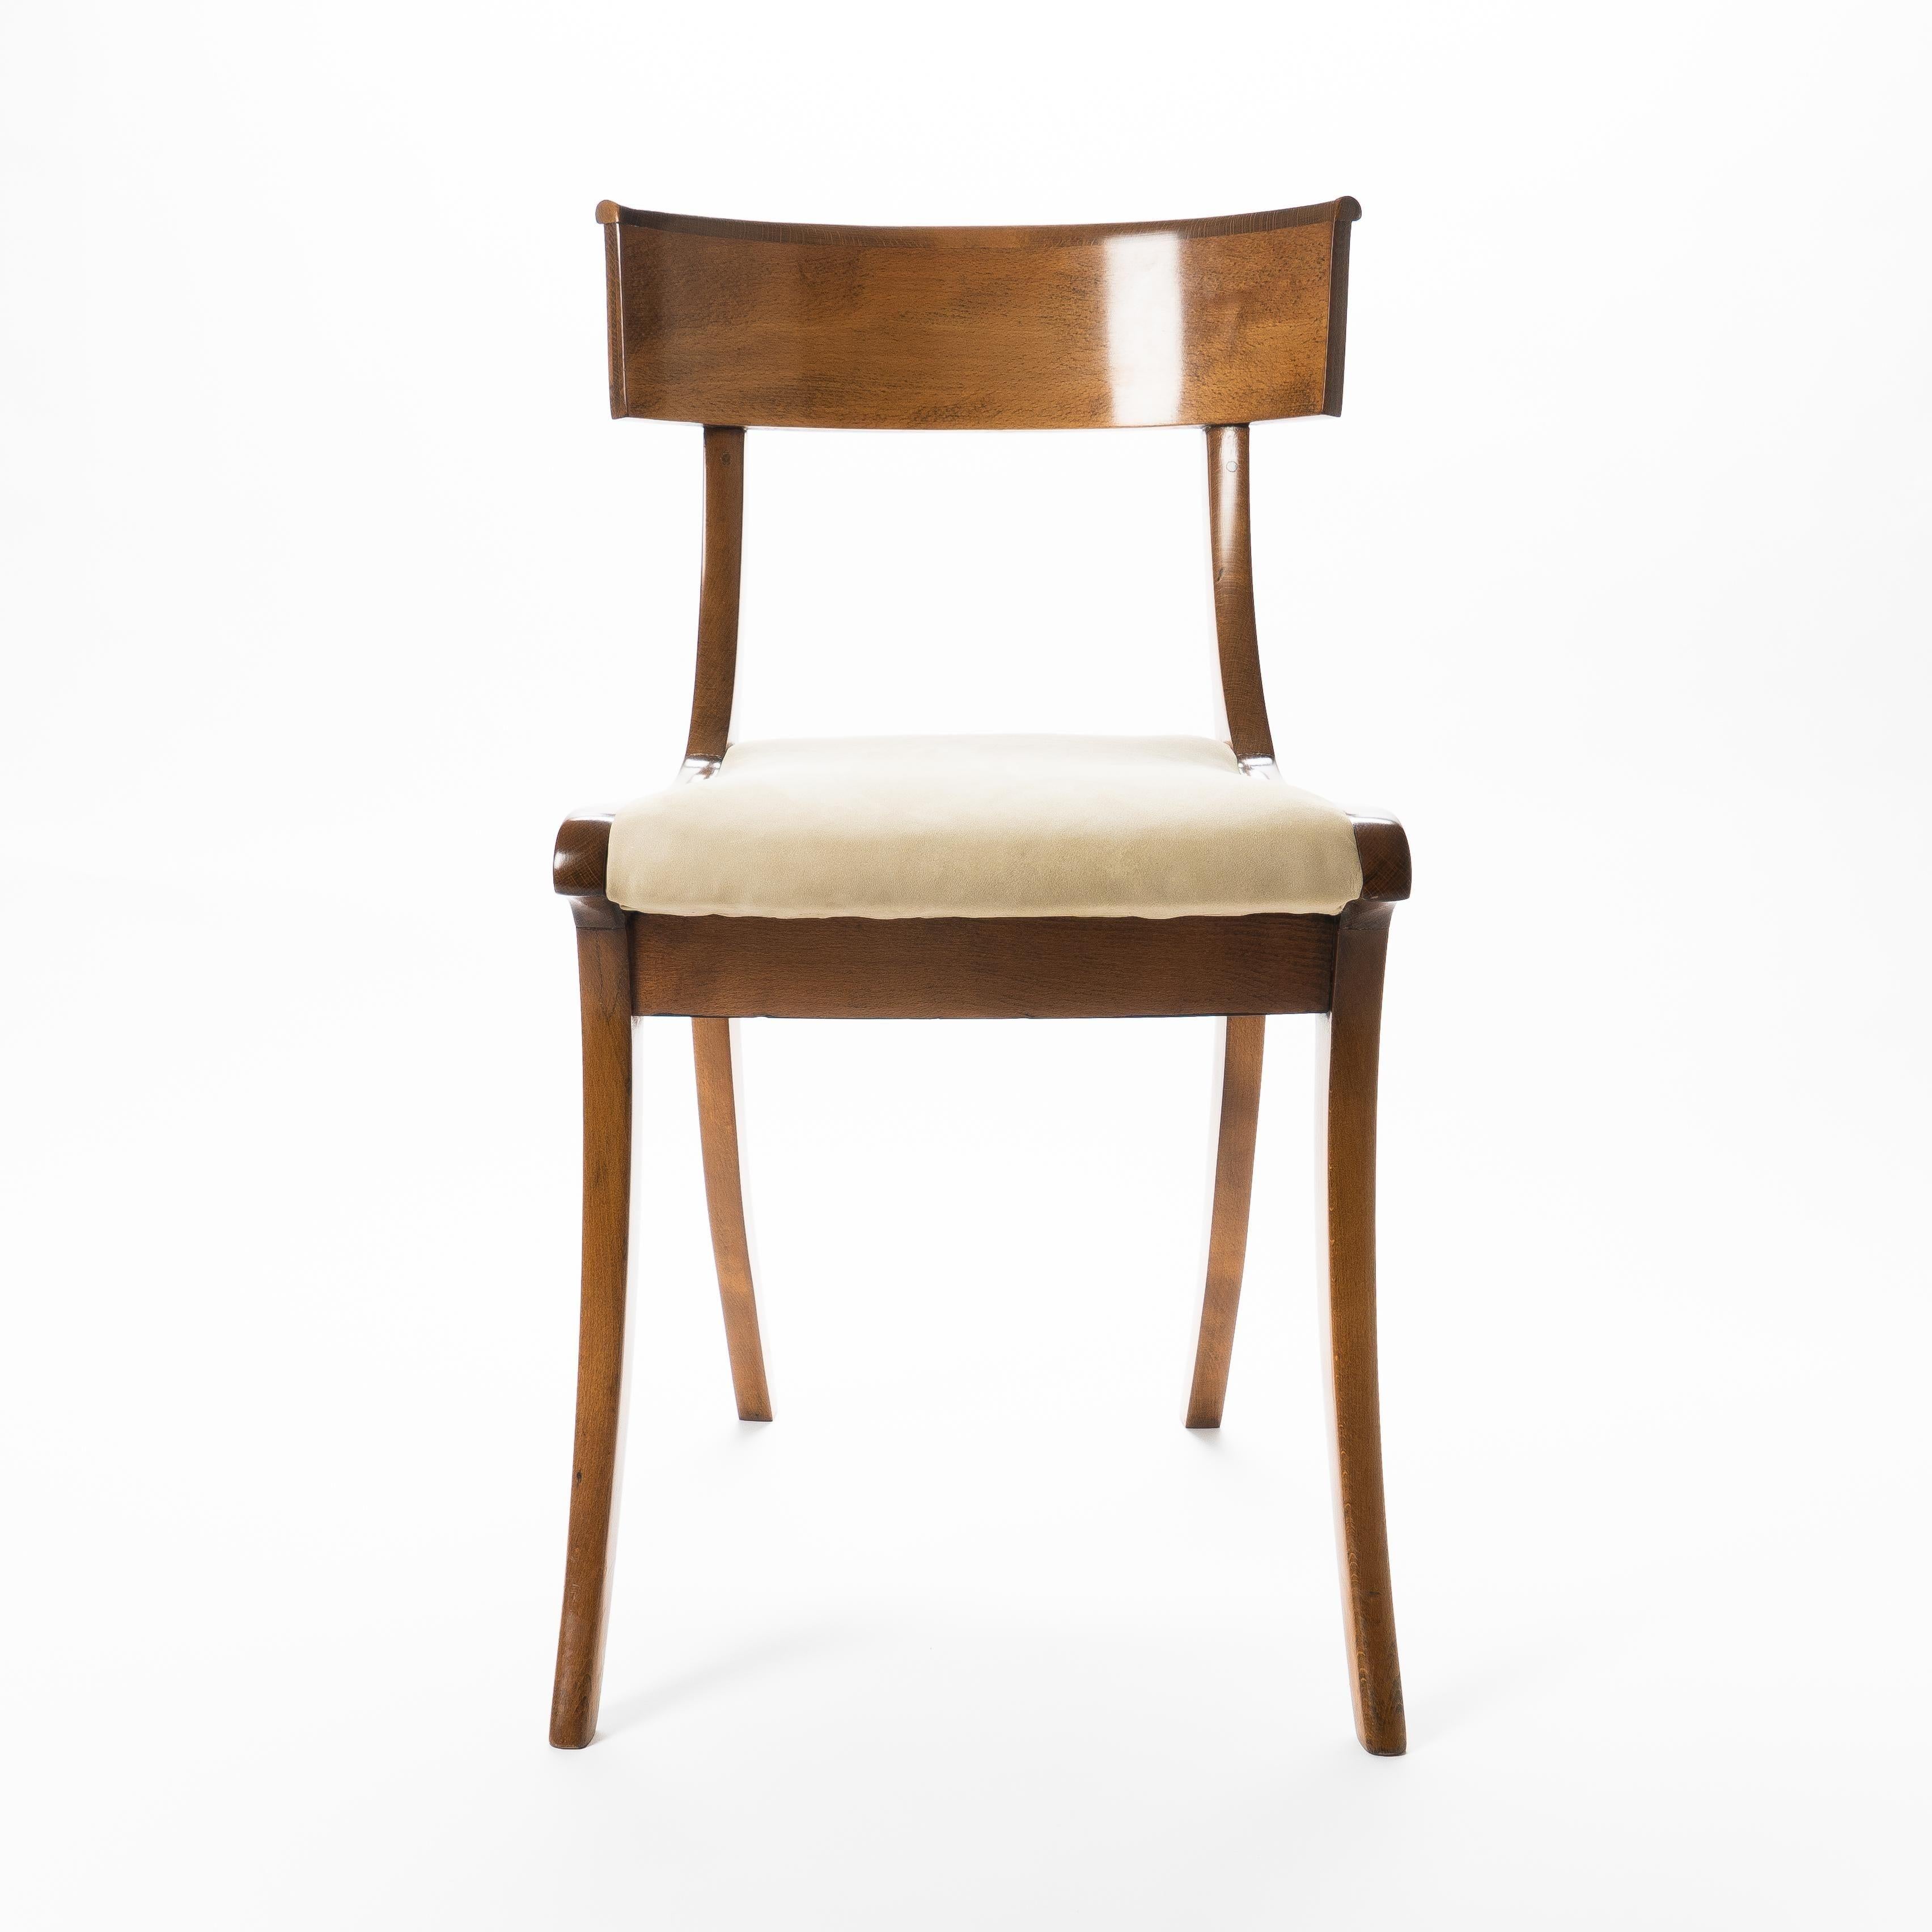 Drei säbelförmige Stühle der Form Klismos aus europäischer Buche und Mahagoni mit mit Wildleder gepolsterten Sitzen.
Dänemark, um 1820.